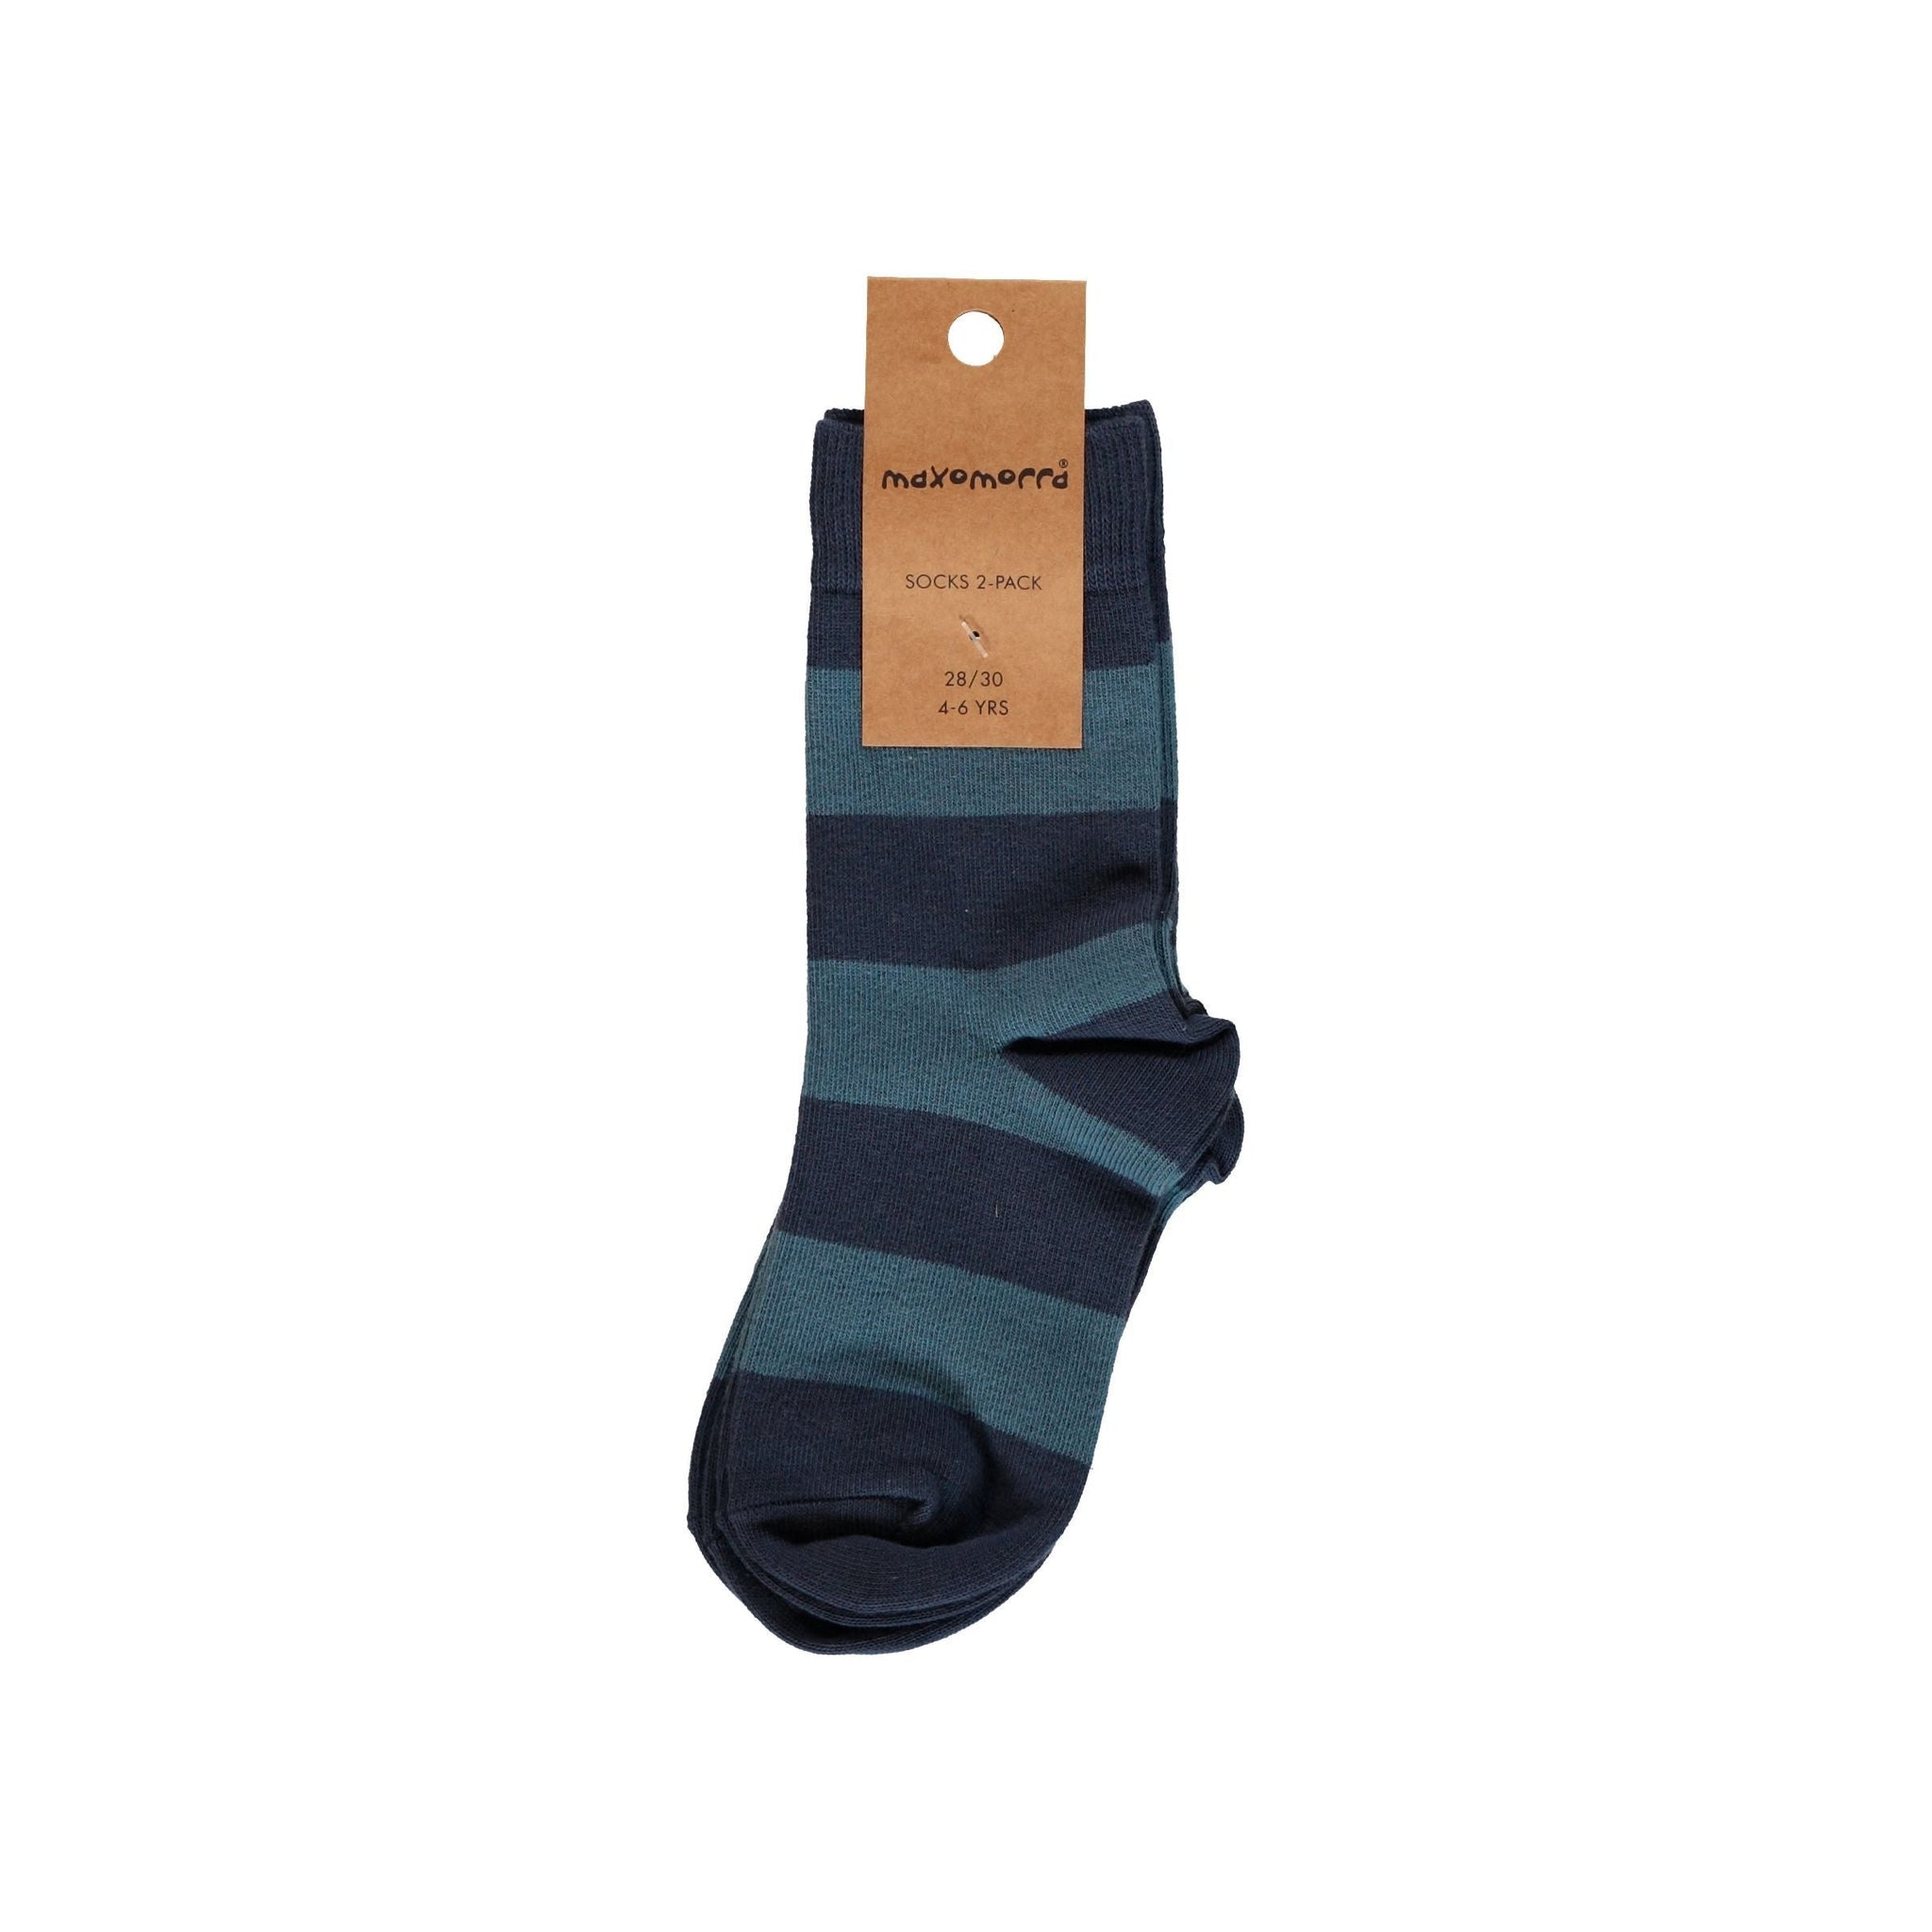 Maxomorra - Stripe - Midnight Socks (2 Pack) (6-12 Months)